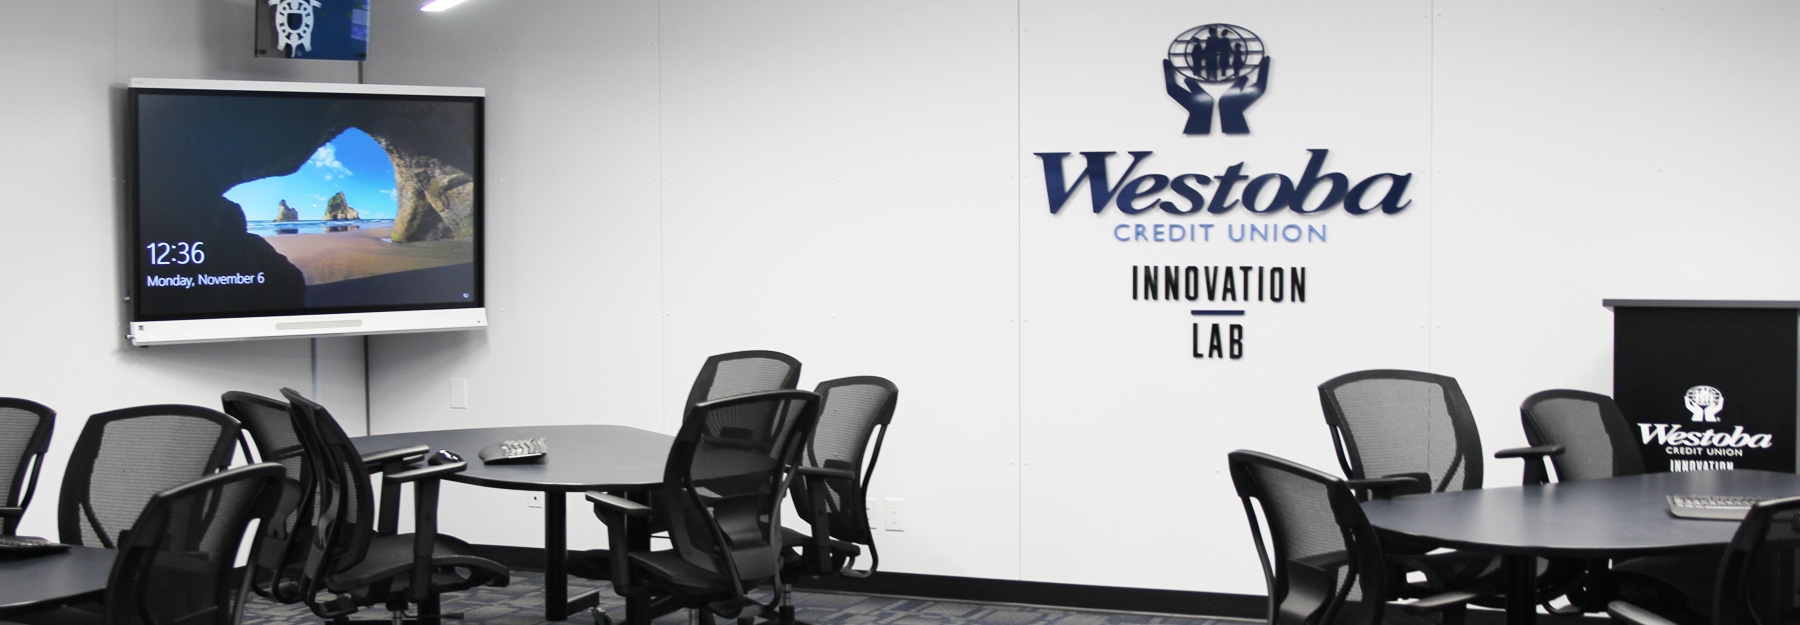 Westoba Innovation Lab